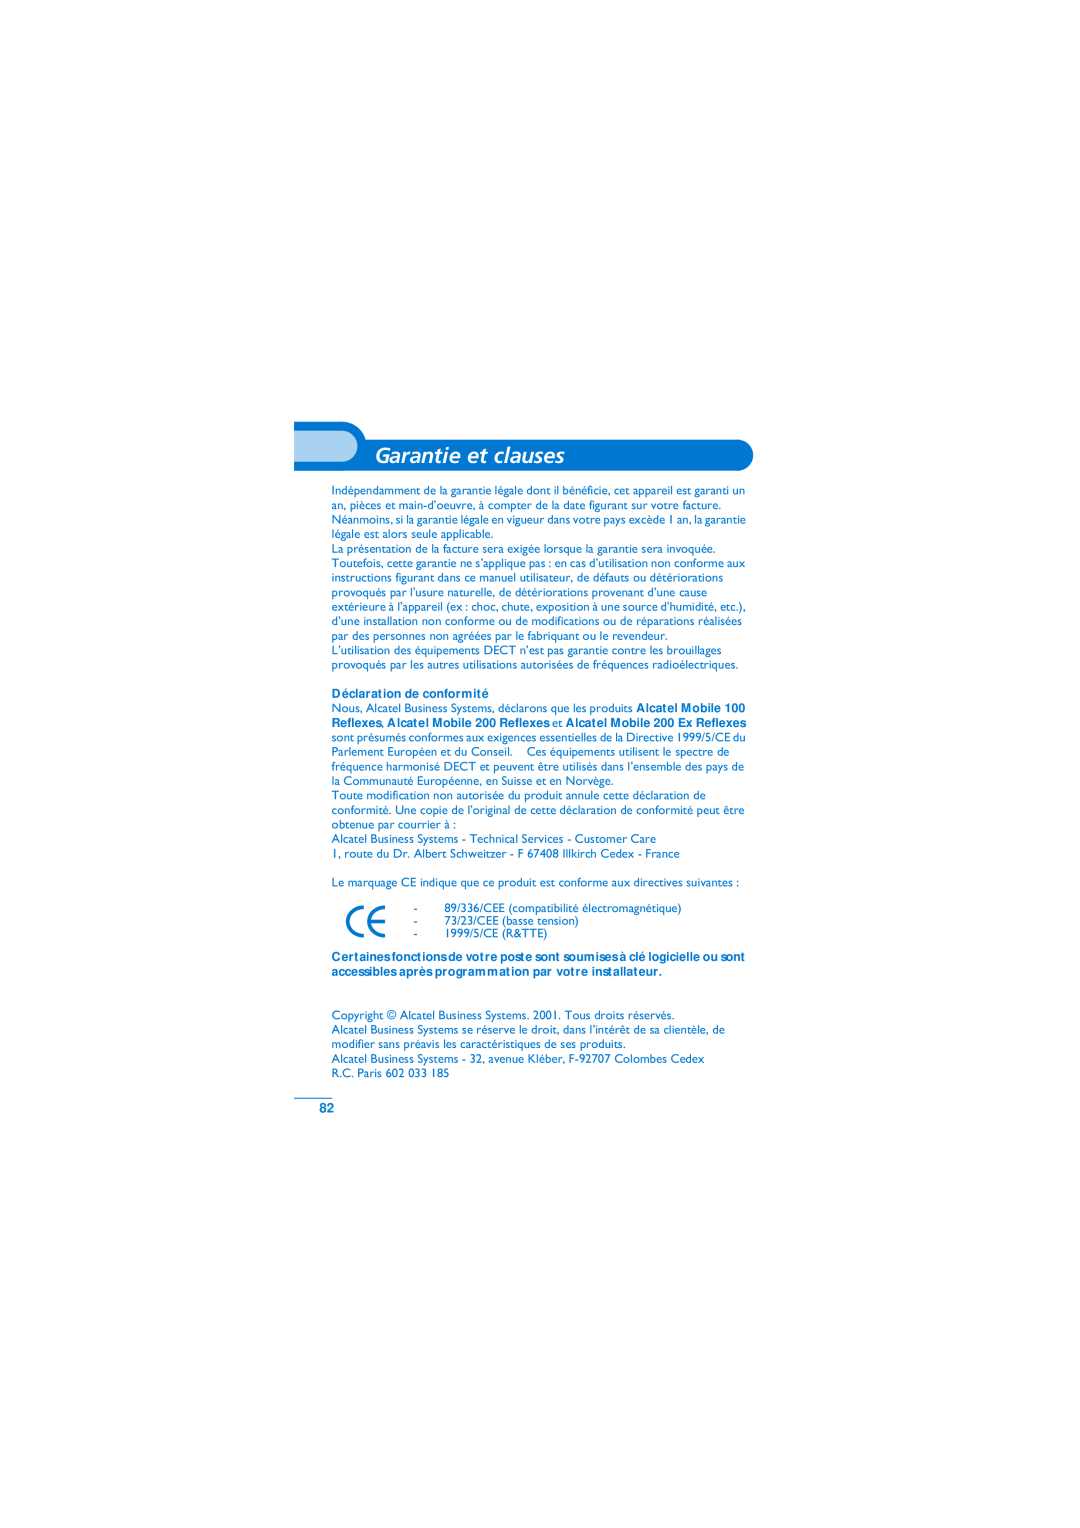 Alcatel-Lucent Mobile Reflexes 100 manual Garantie et clauses, Déclaration de conformité 